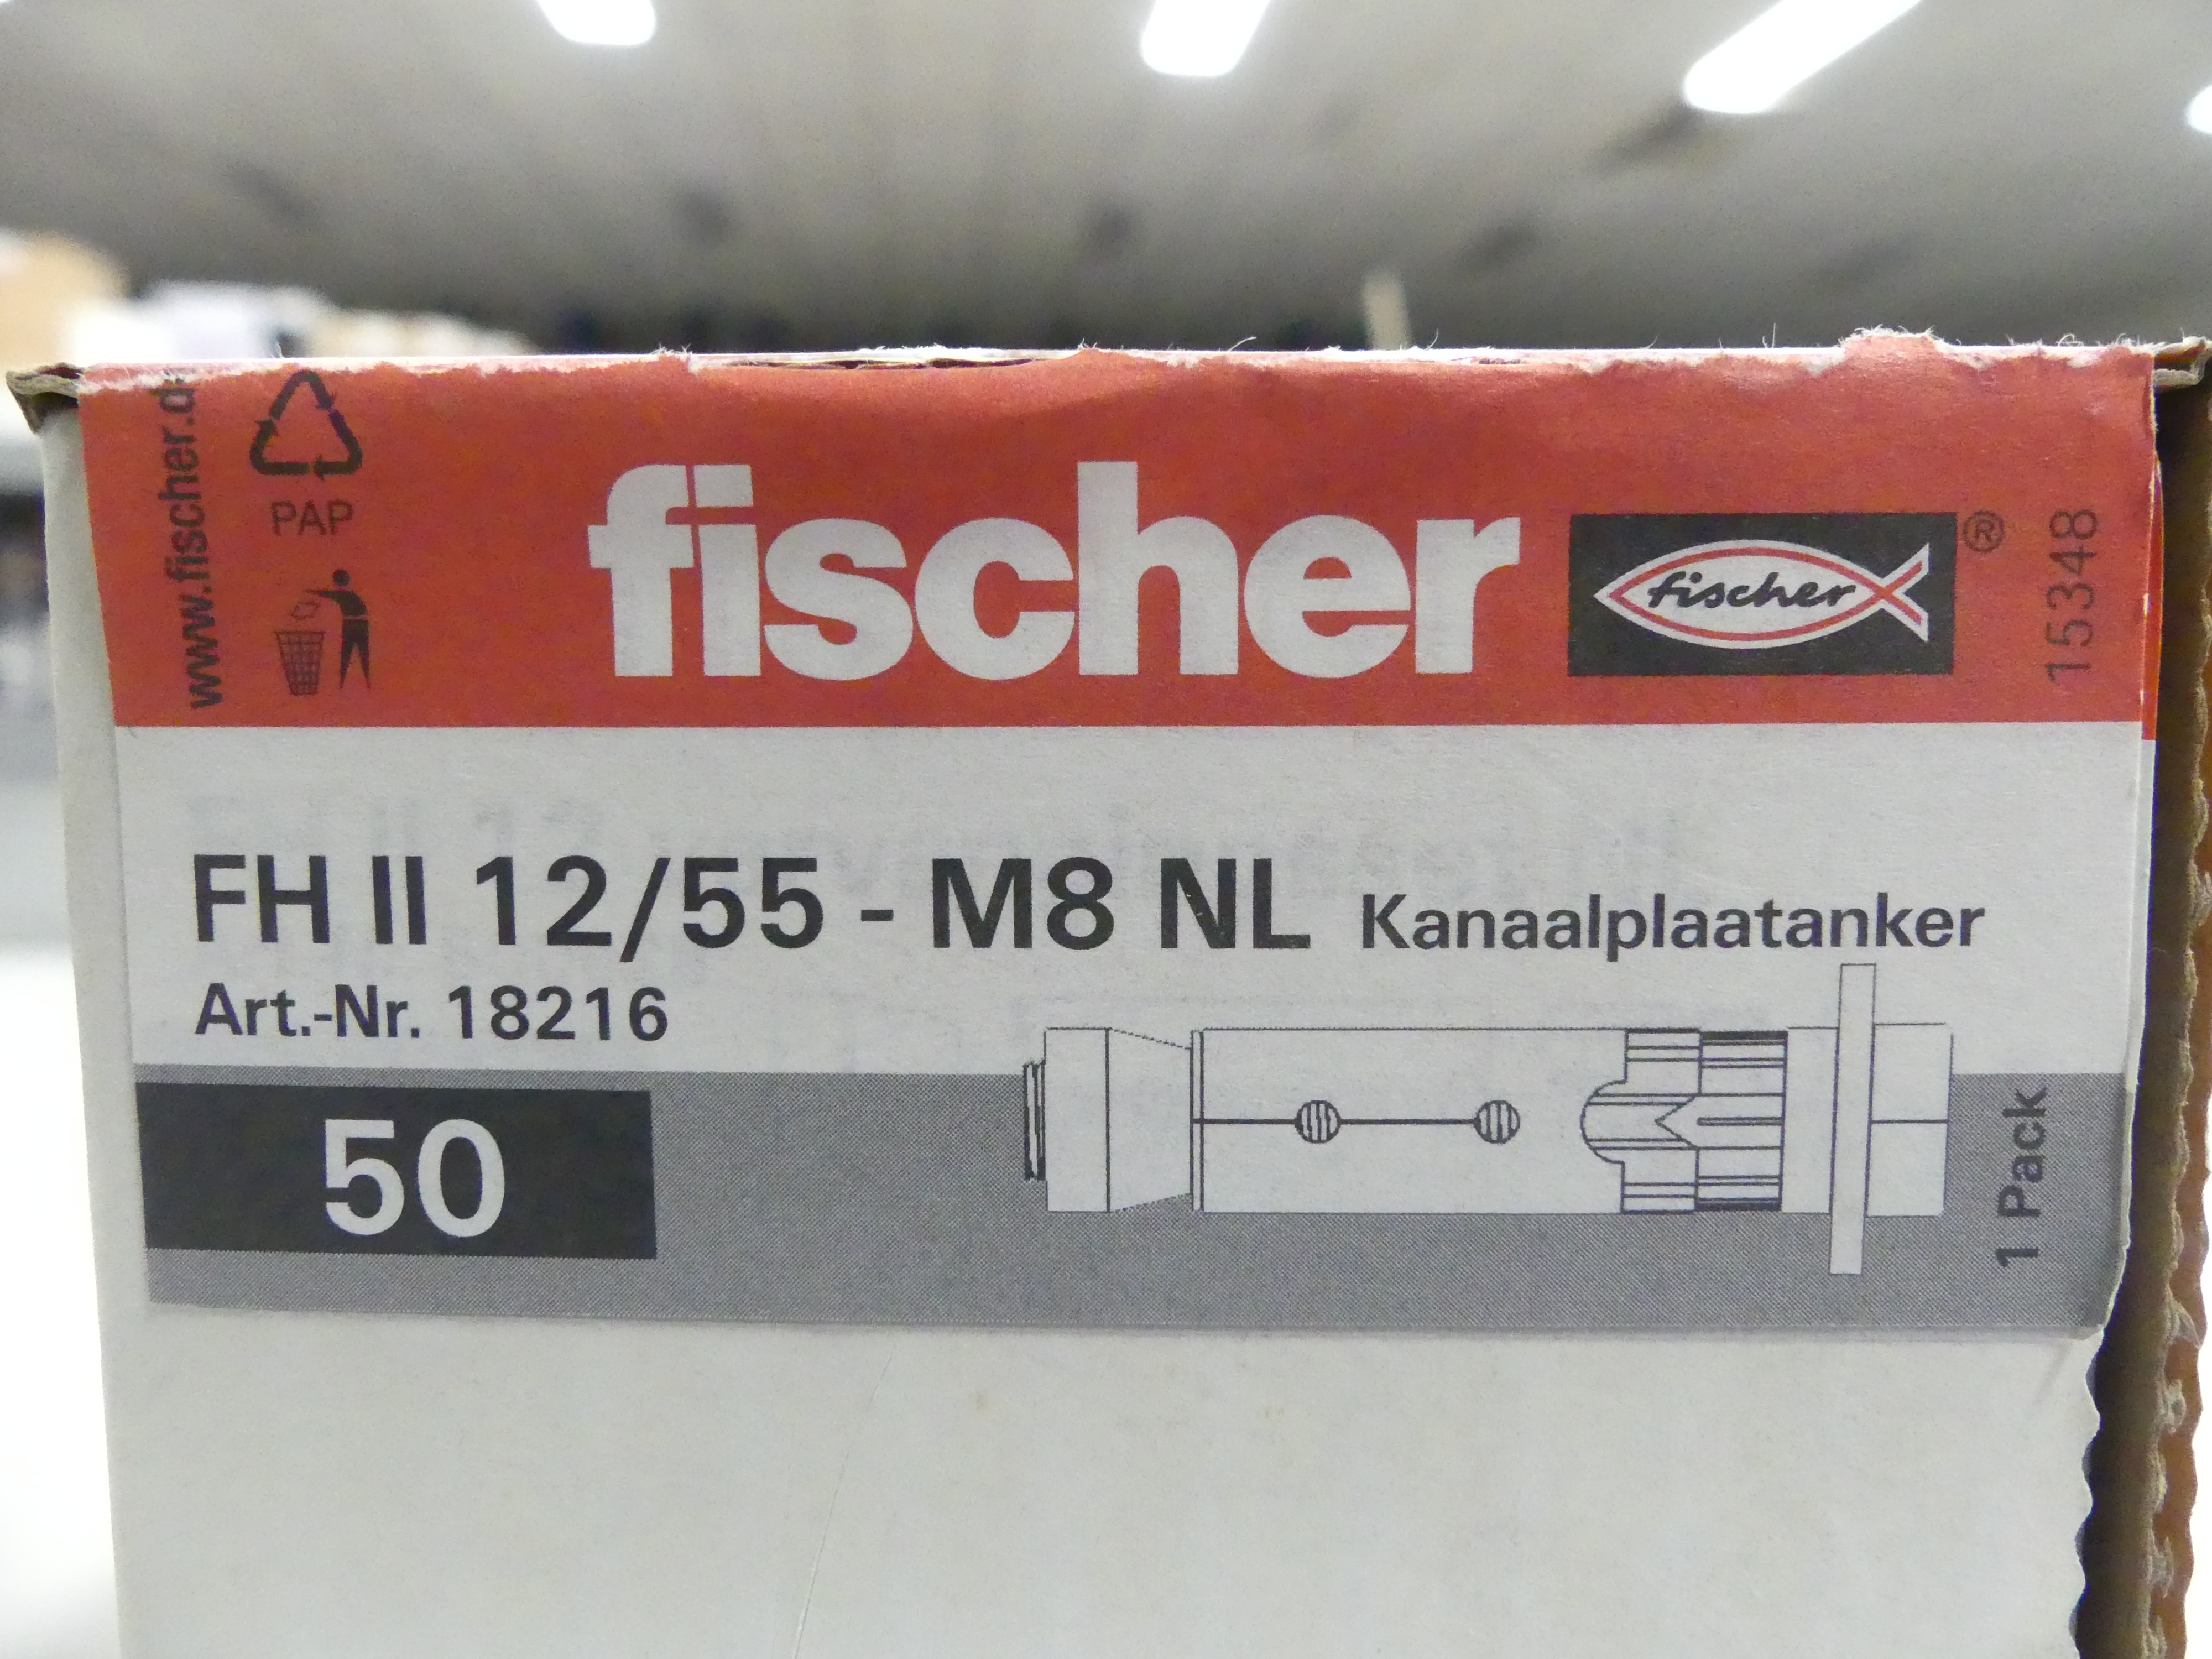 4x50 stuks Fischer kanaalplaatankers FH II 12/55 - M8 NL   